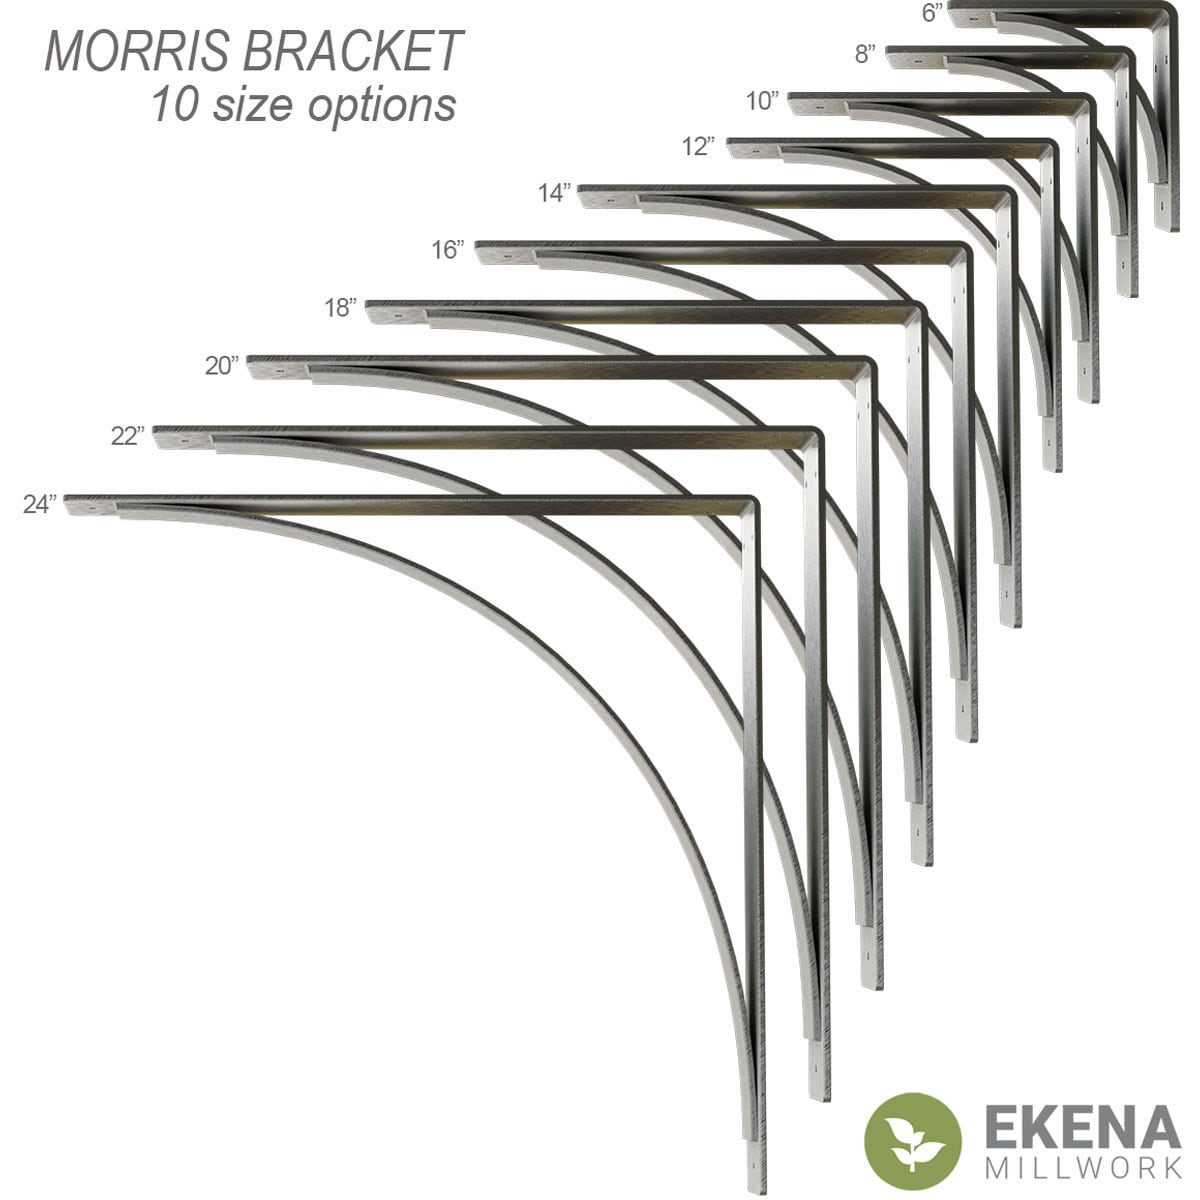 Ekena Millwork Morris 14-in x 3-in x 14-in Brown Steel Mounting Bracket